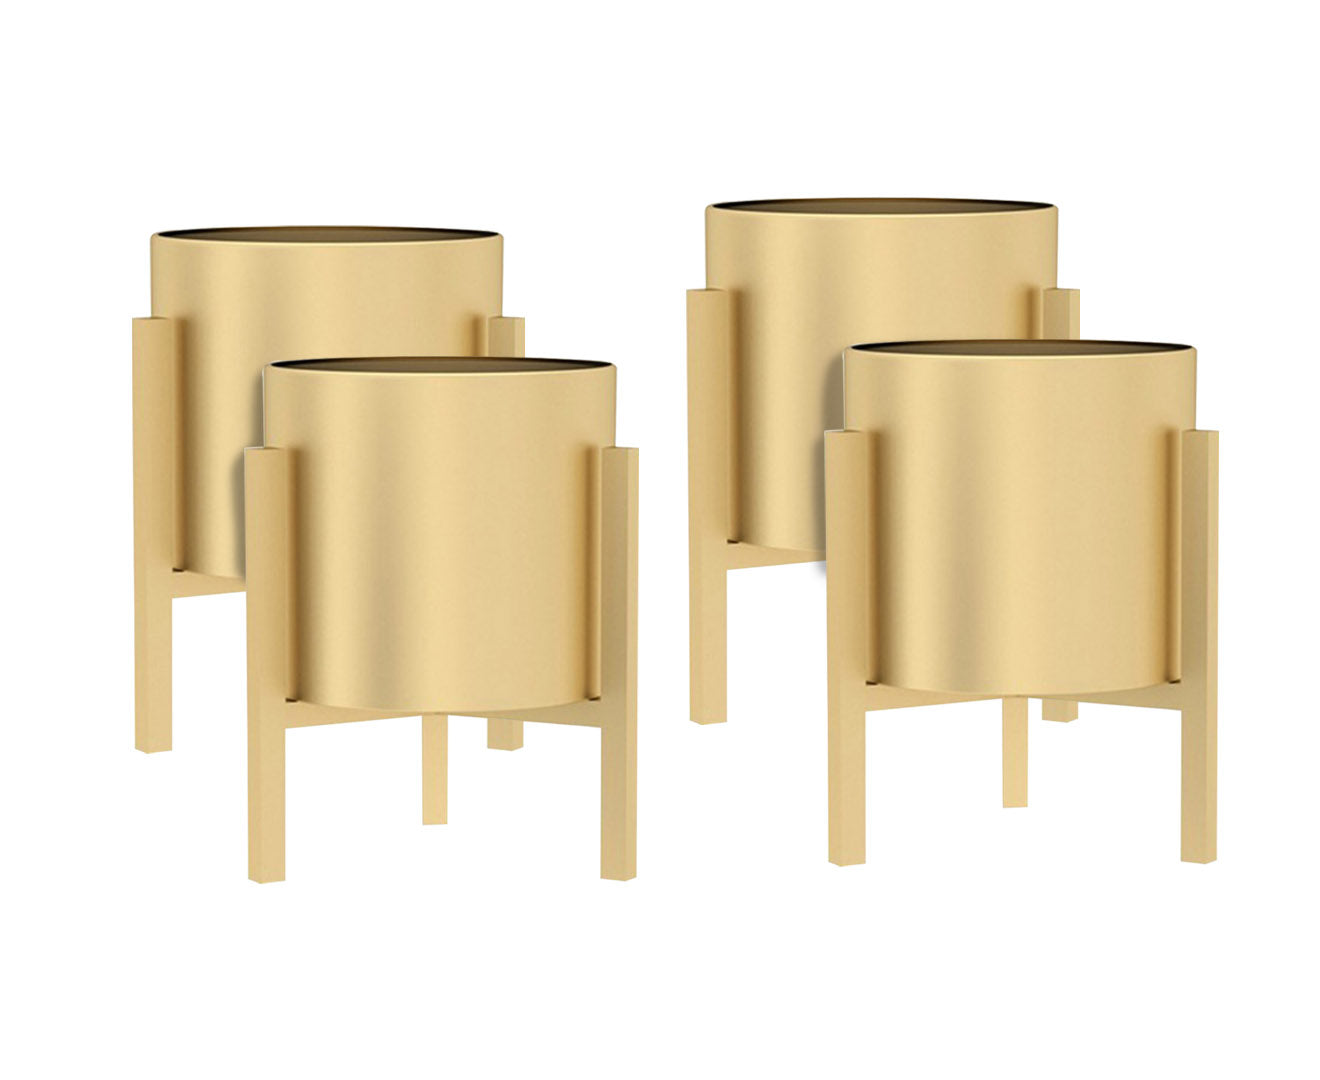 SOGA 4X 30CM Gold Metal Plant Stand with Flower Pot Holder Corner Shelving Rack Indoor Display-Indoor Pots, Planters and Plant Stands-PEROZ Accessories